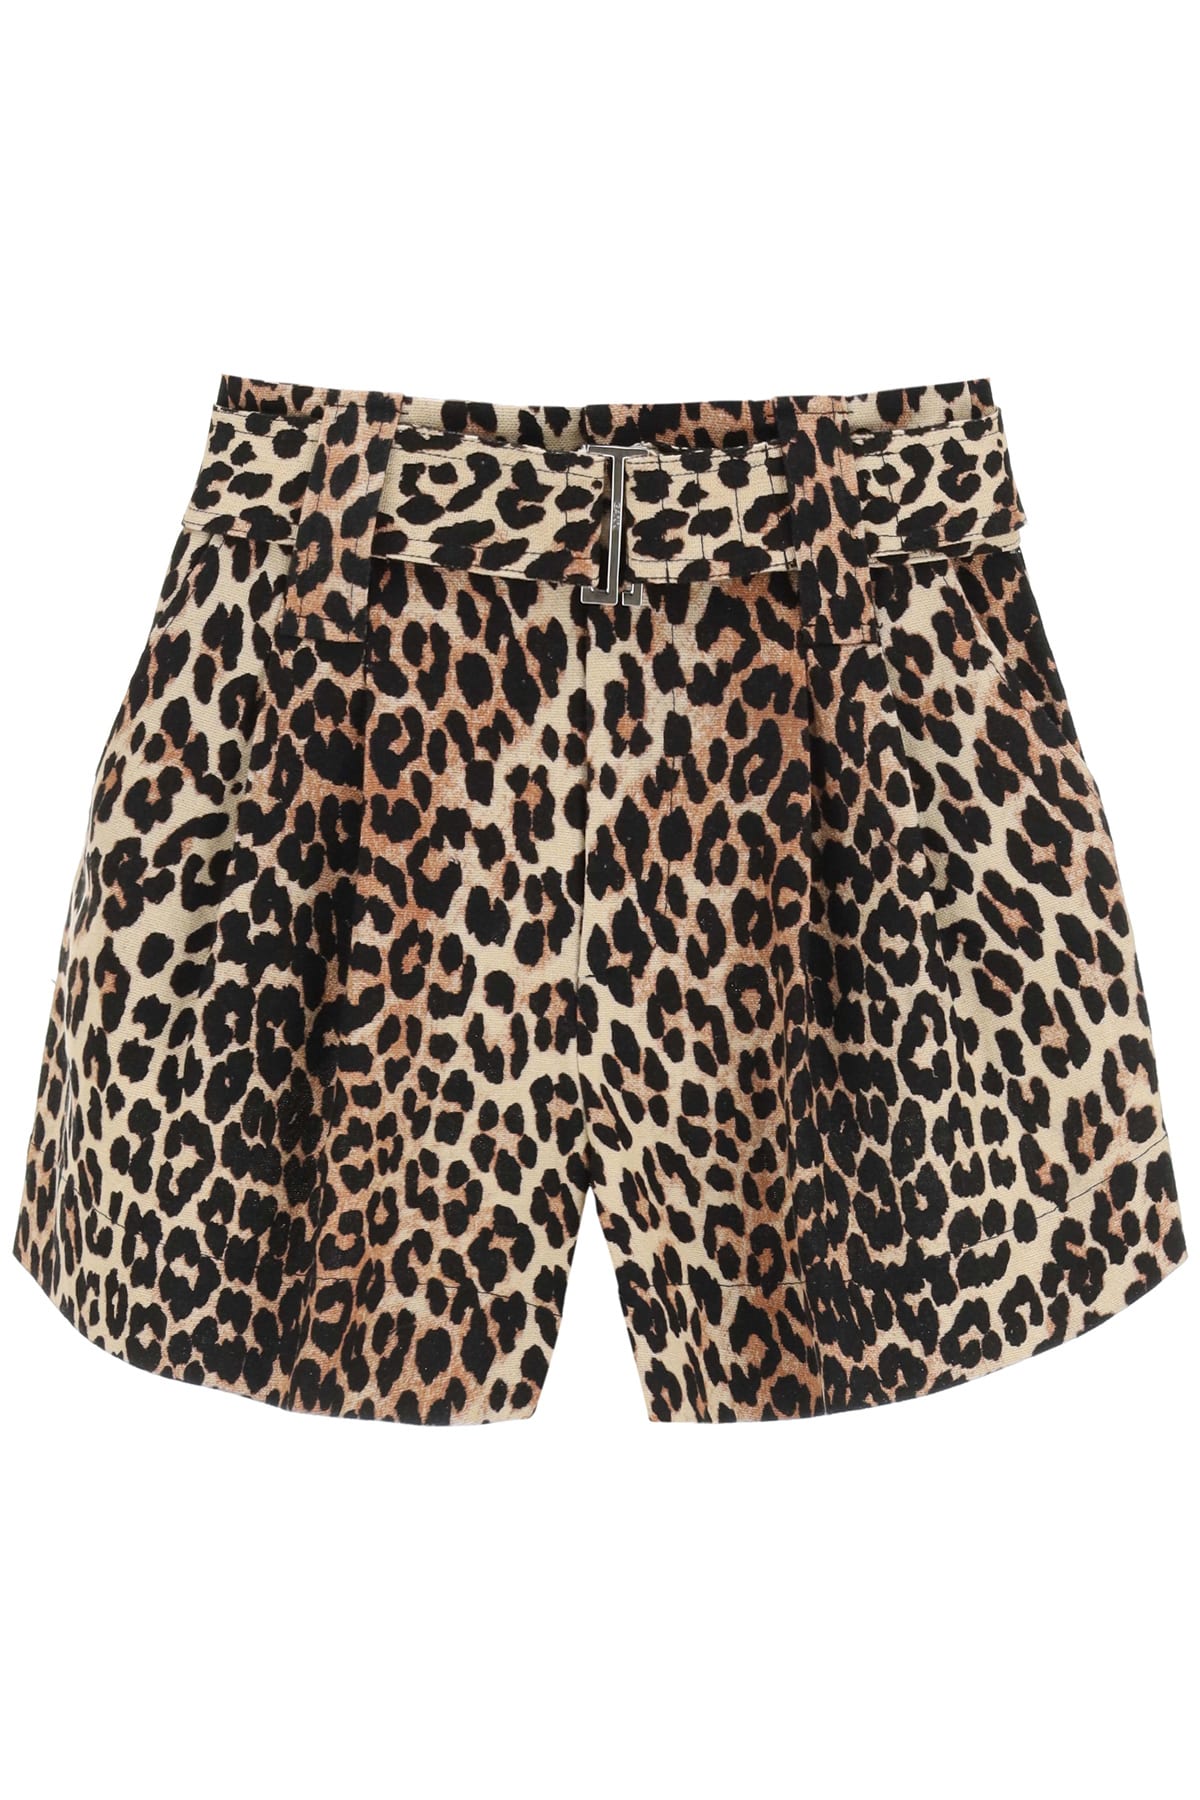 Ganni Leopard Print Linen Blend Shorts